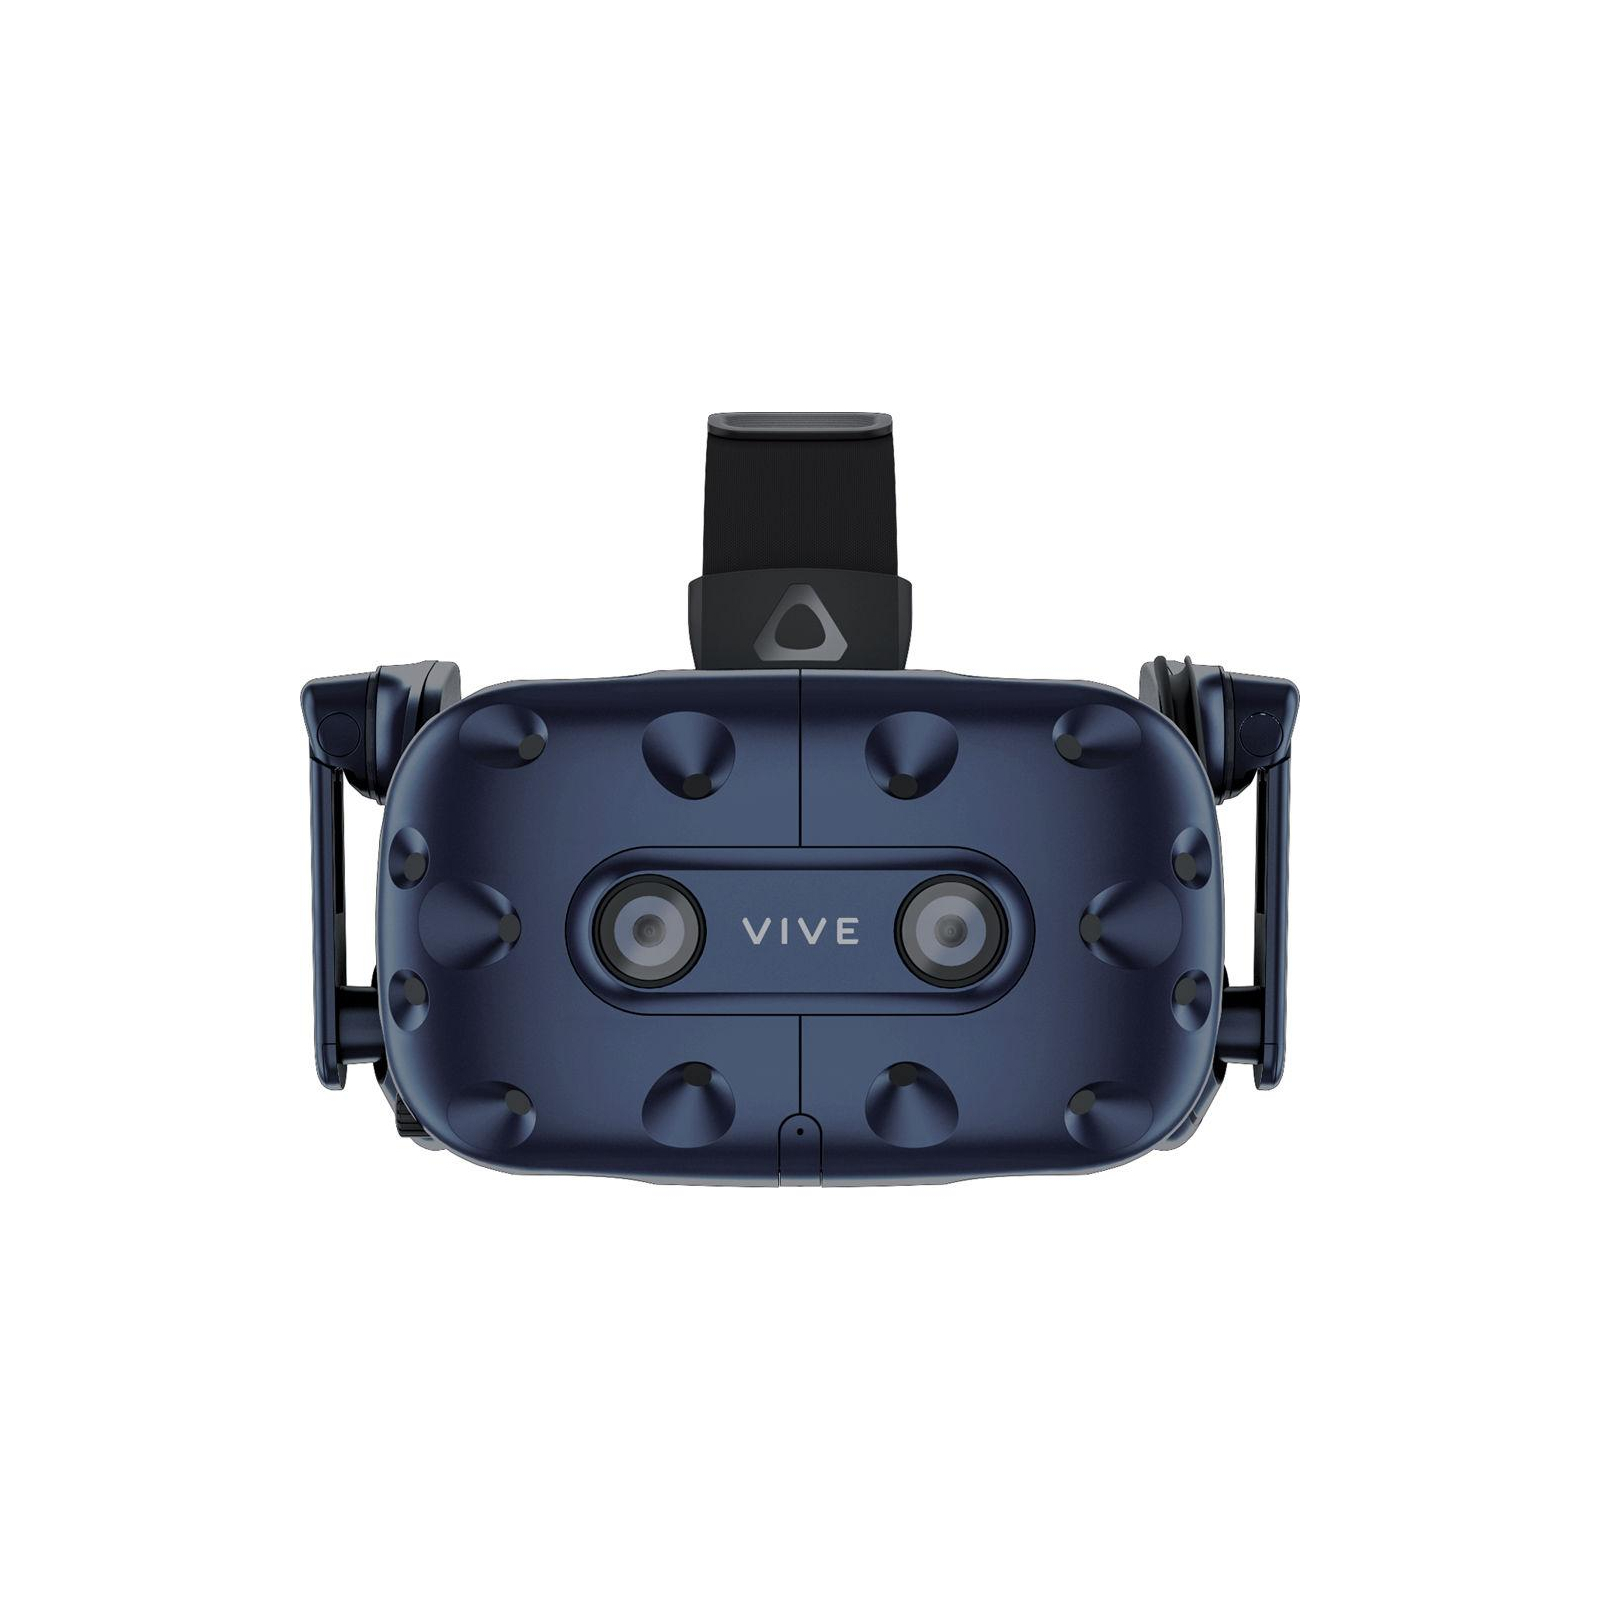 Очки виртуальной реальности HTC VIVE PRO KIT (2.0) Blue-Black (99HANW006-00) изображение 2